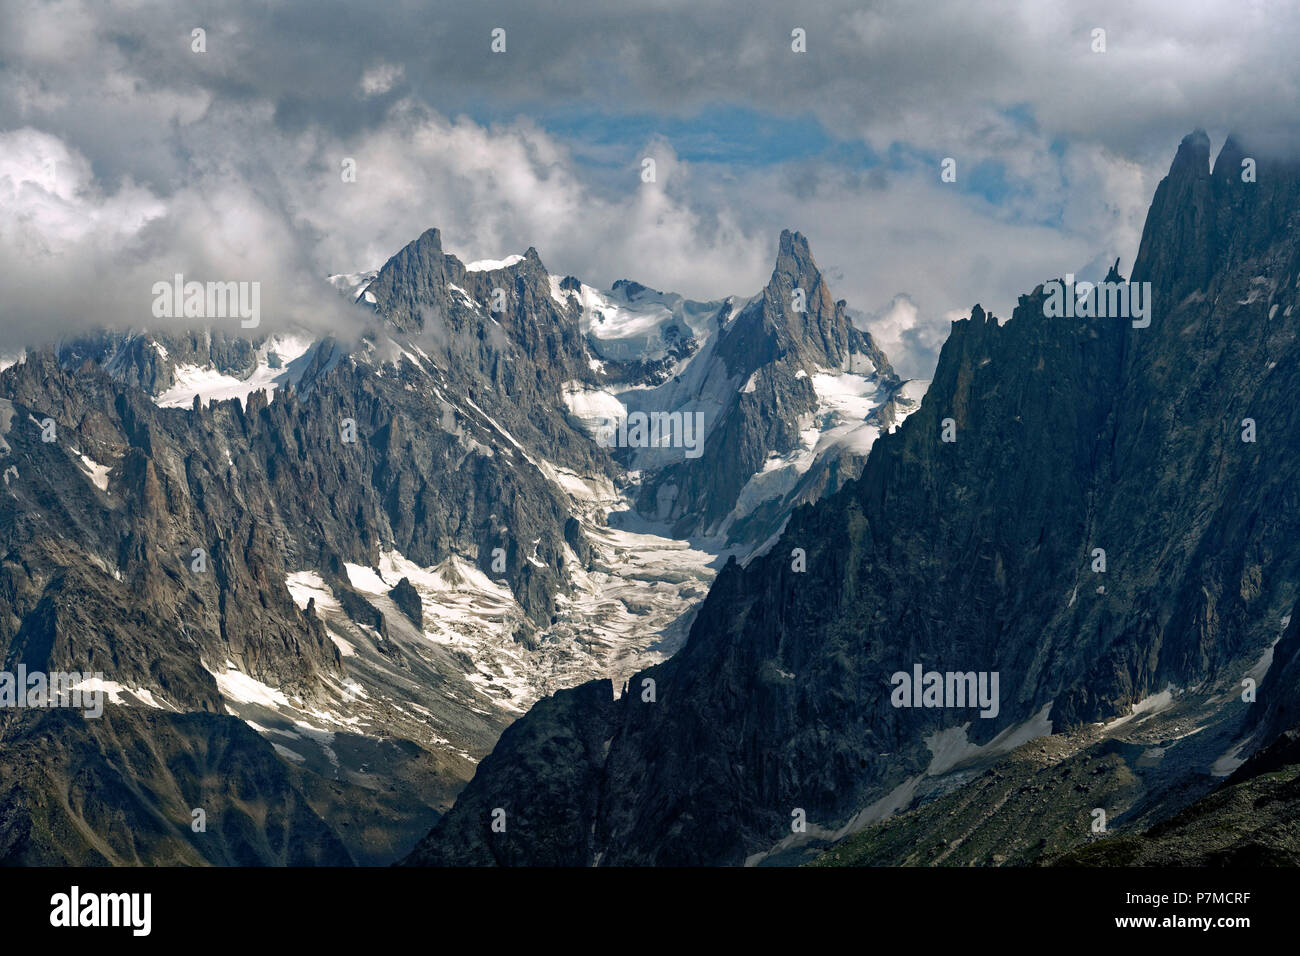 France, Haute Savoie, Chamonix Mont Blanc, the Mer de Glace glacier Stock Photo